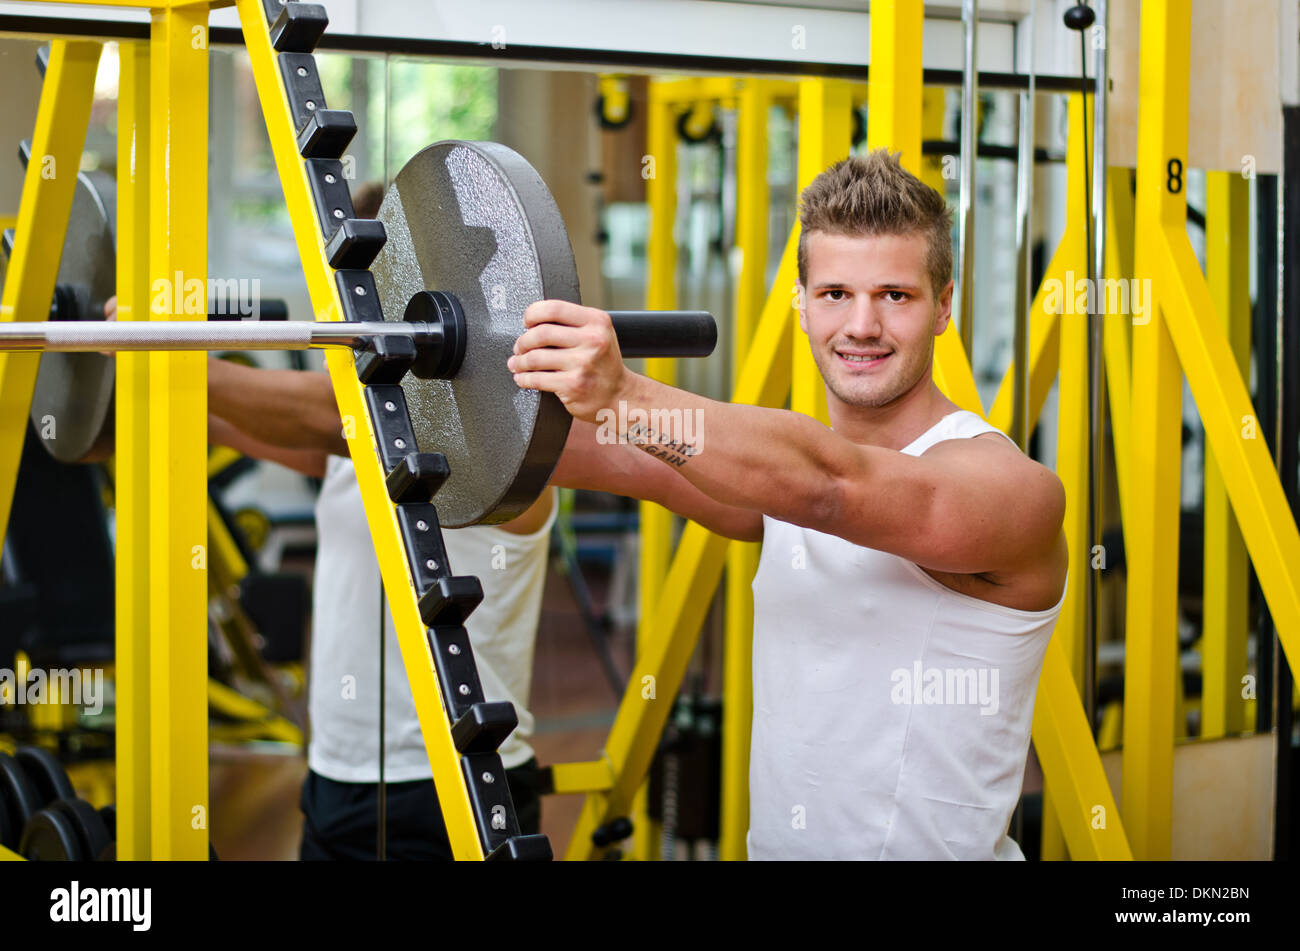 Hübschen jungen Mann im Fitnessstudio, Hantel, Gewicht Disck aufsetzen Blick in die Kamera Lächeln Stockfoto